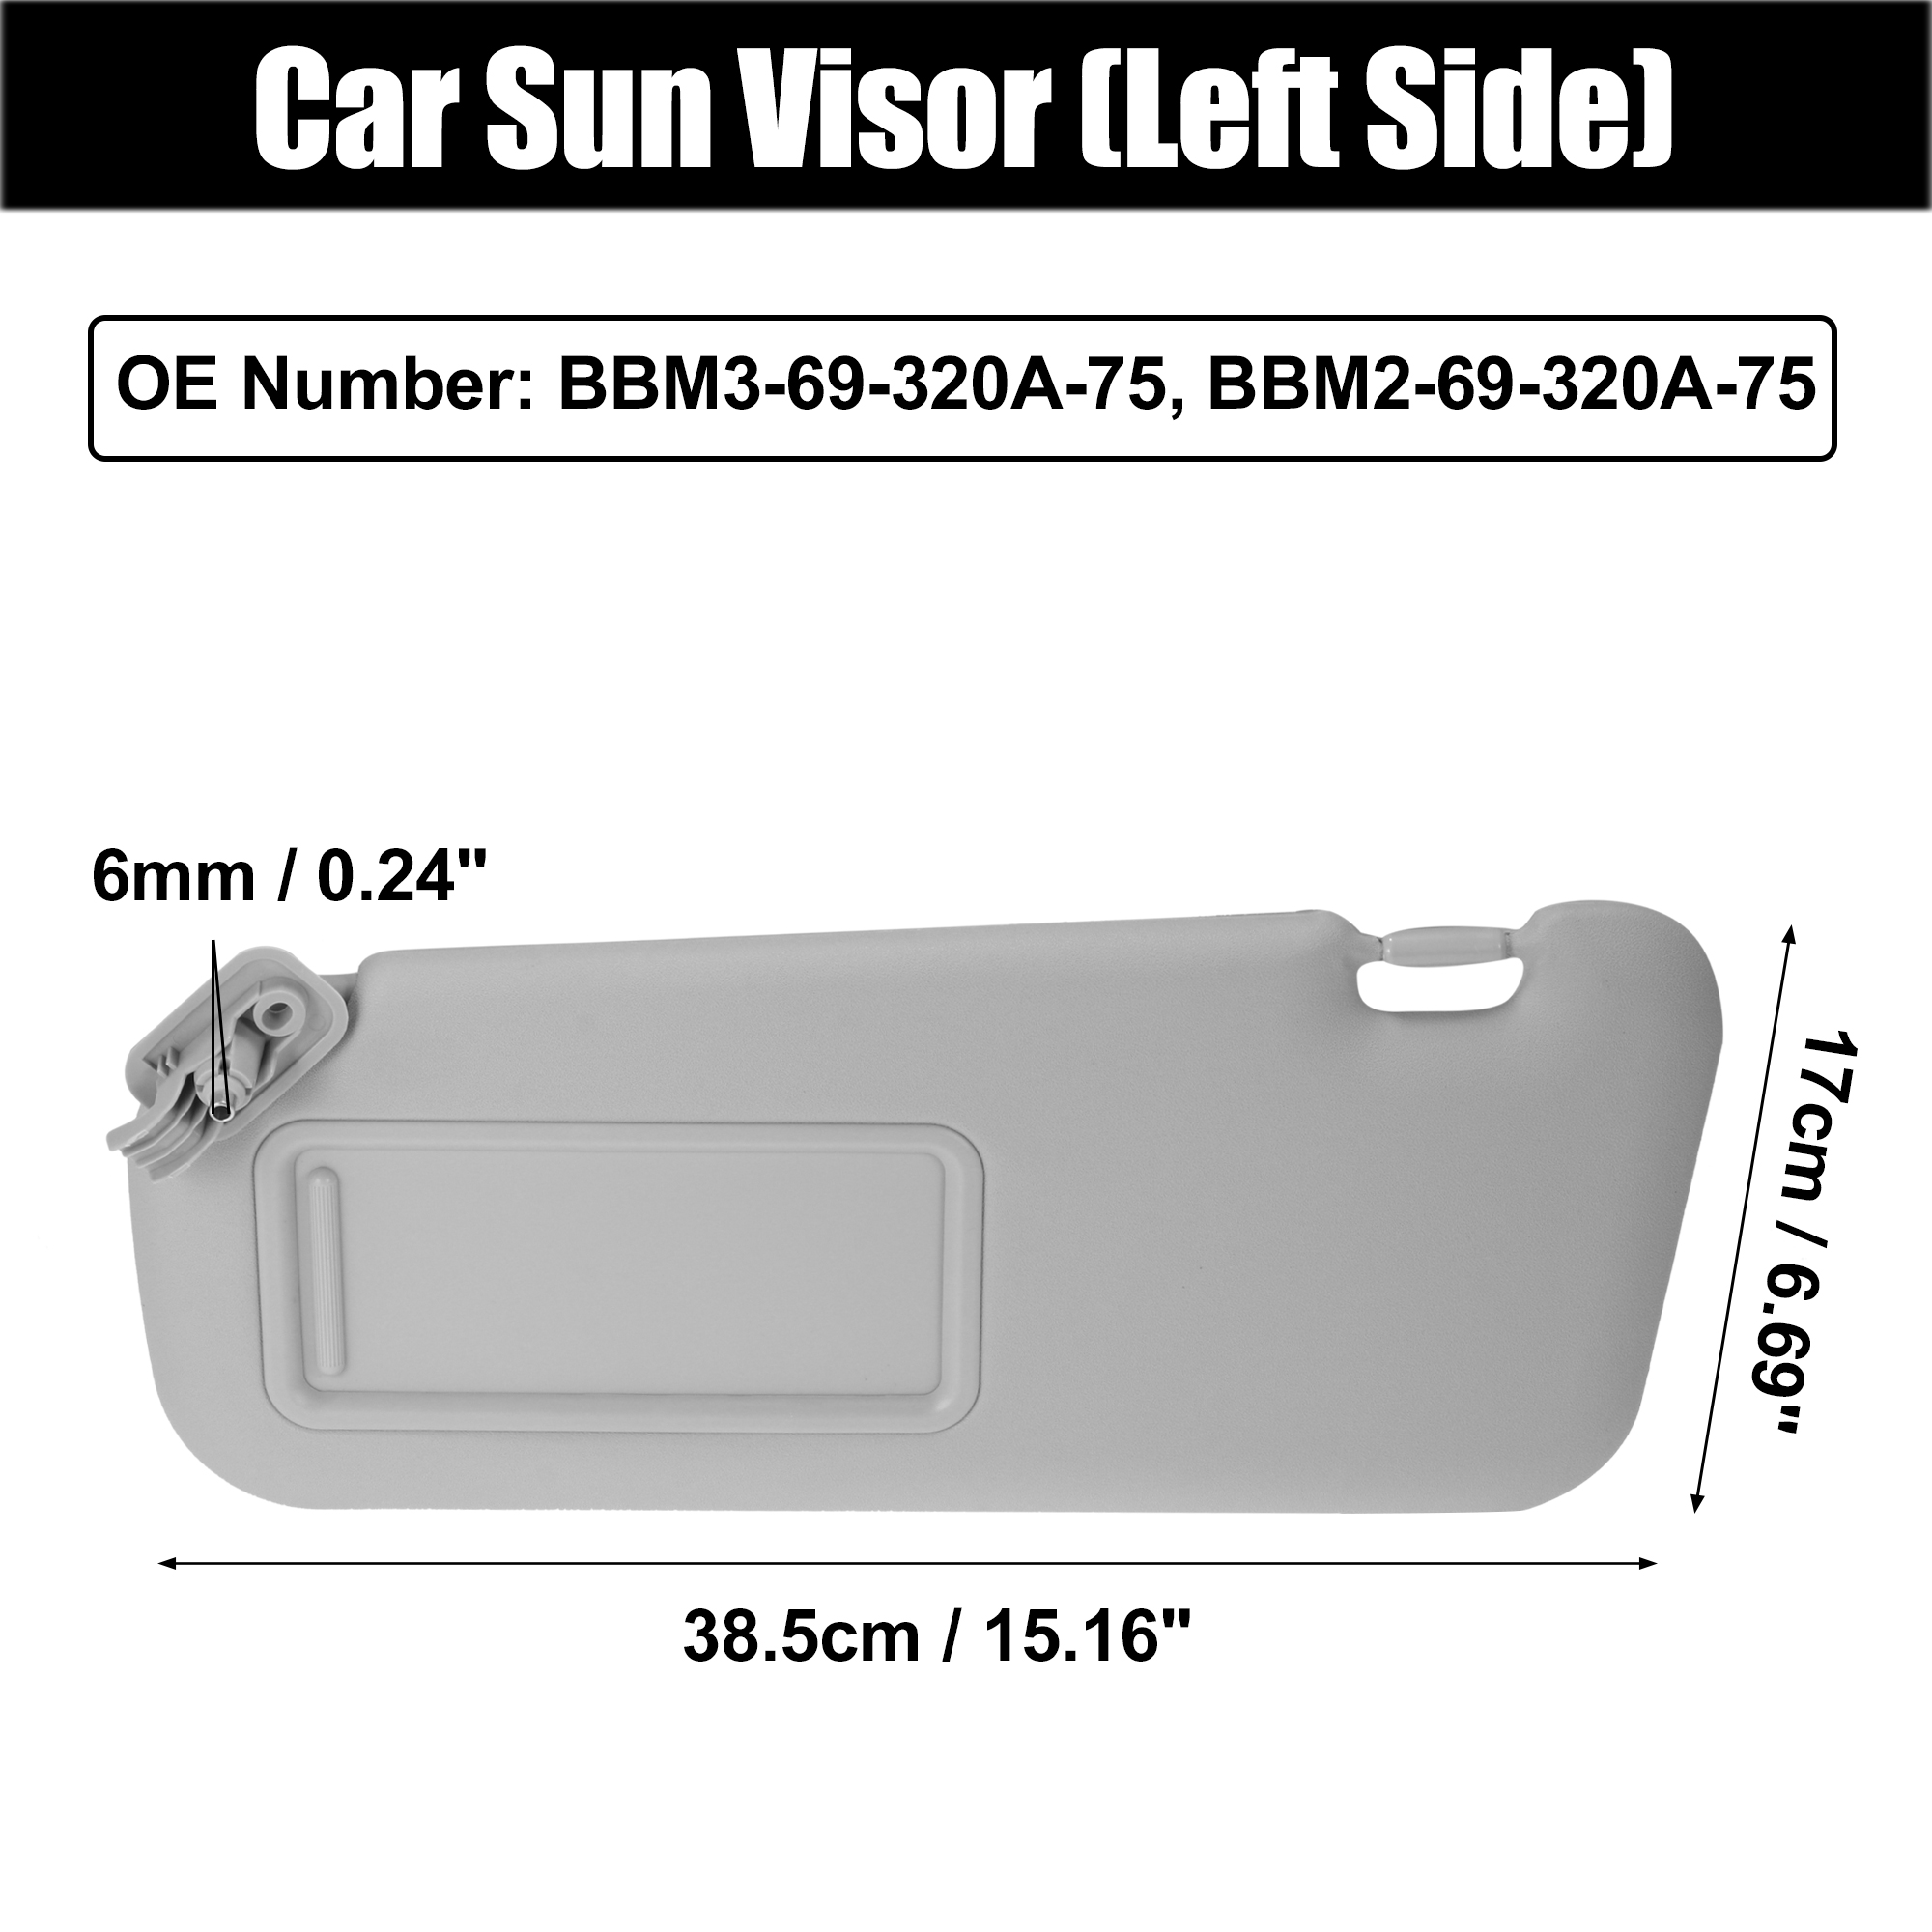 Unique Bargains Front Left Side Car Sun Visor for Mazda 3 10-13 BBM3-69-320A-75 BBM2-69-320A-75